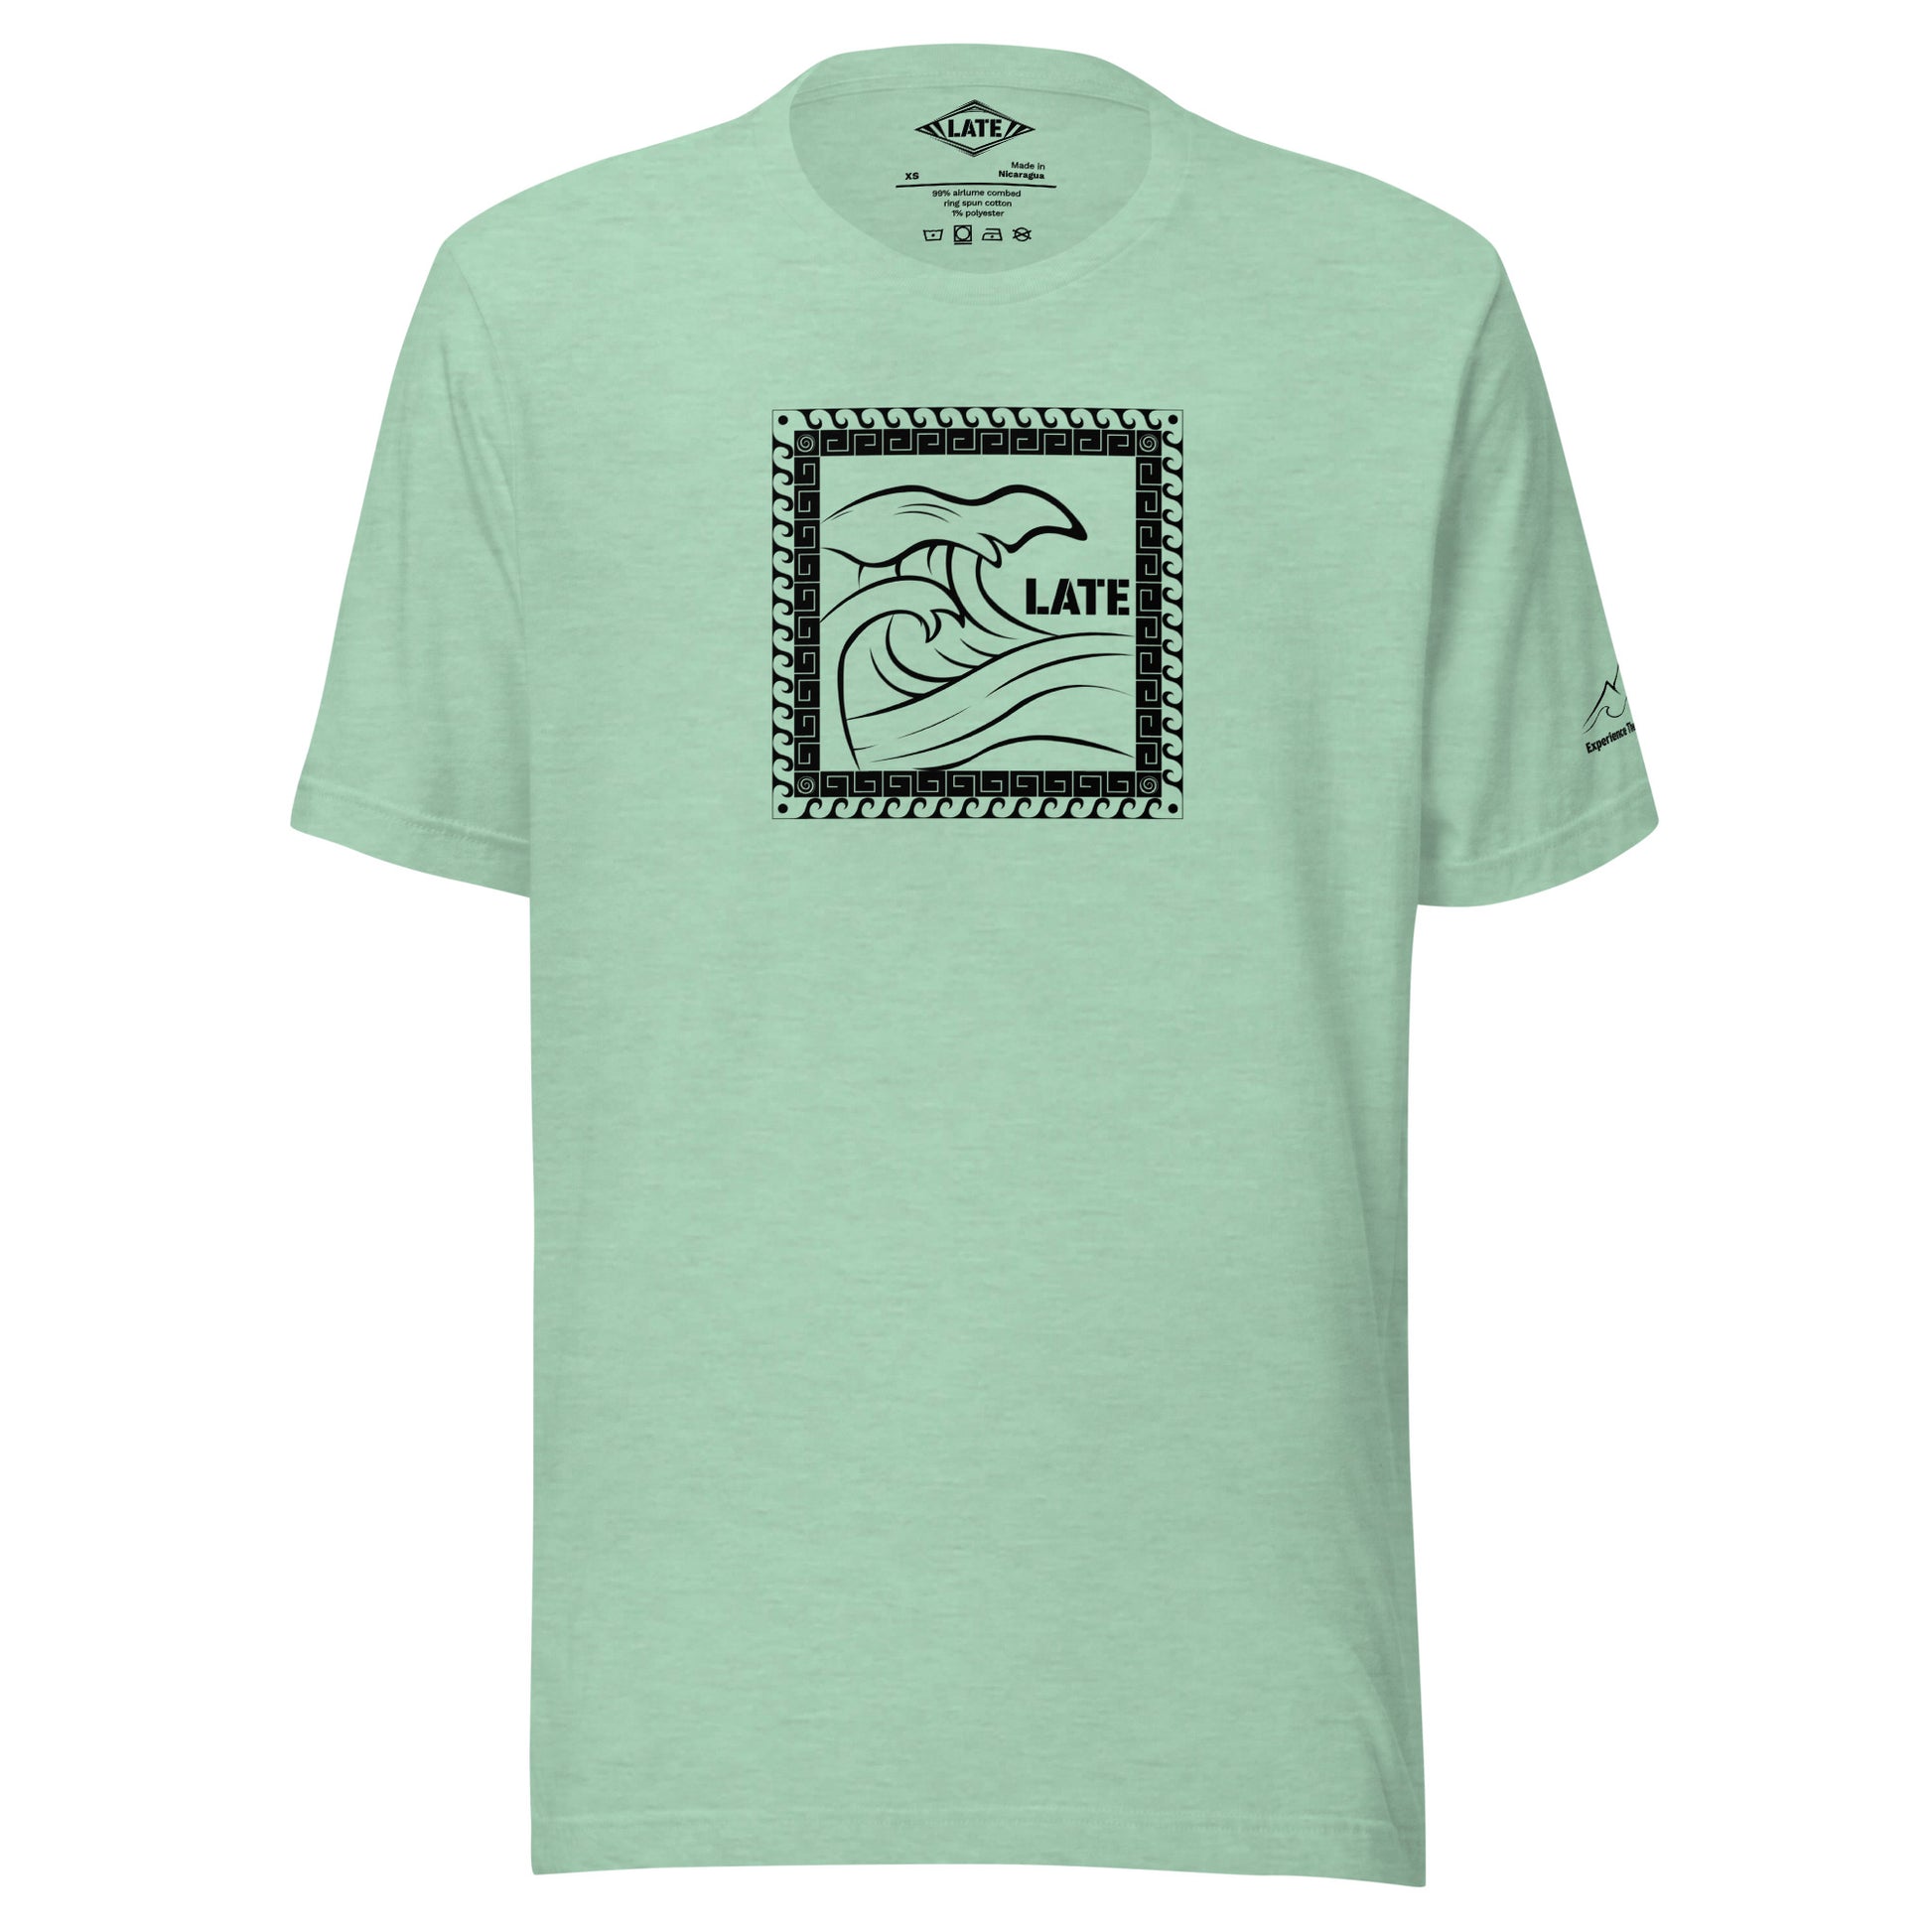 T-Shirt Tricky Wave design vague japonnaise et contour maori texte Late marque de vetement de surf. Tshirt unisex couleur menthe 